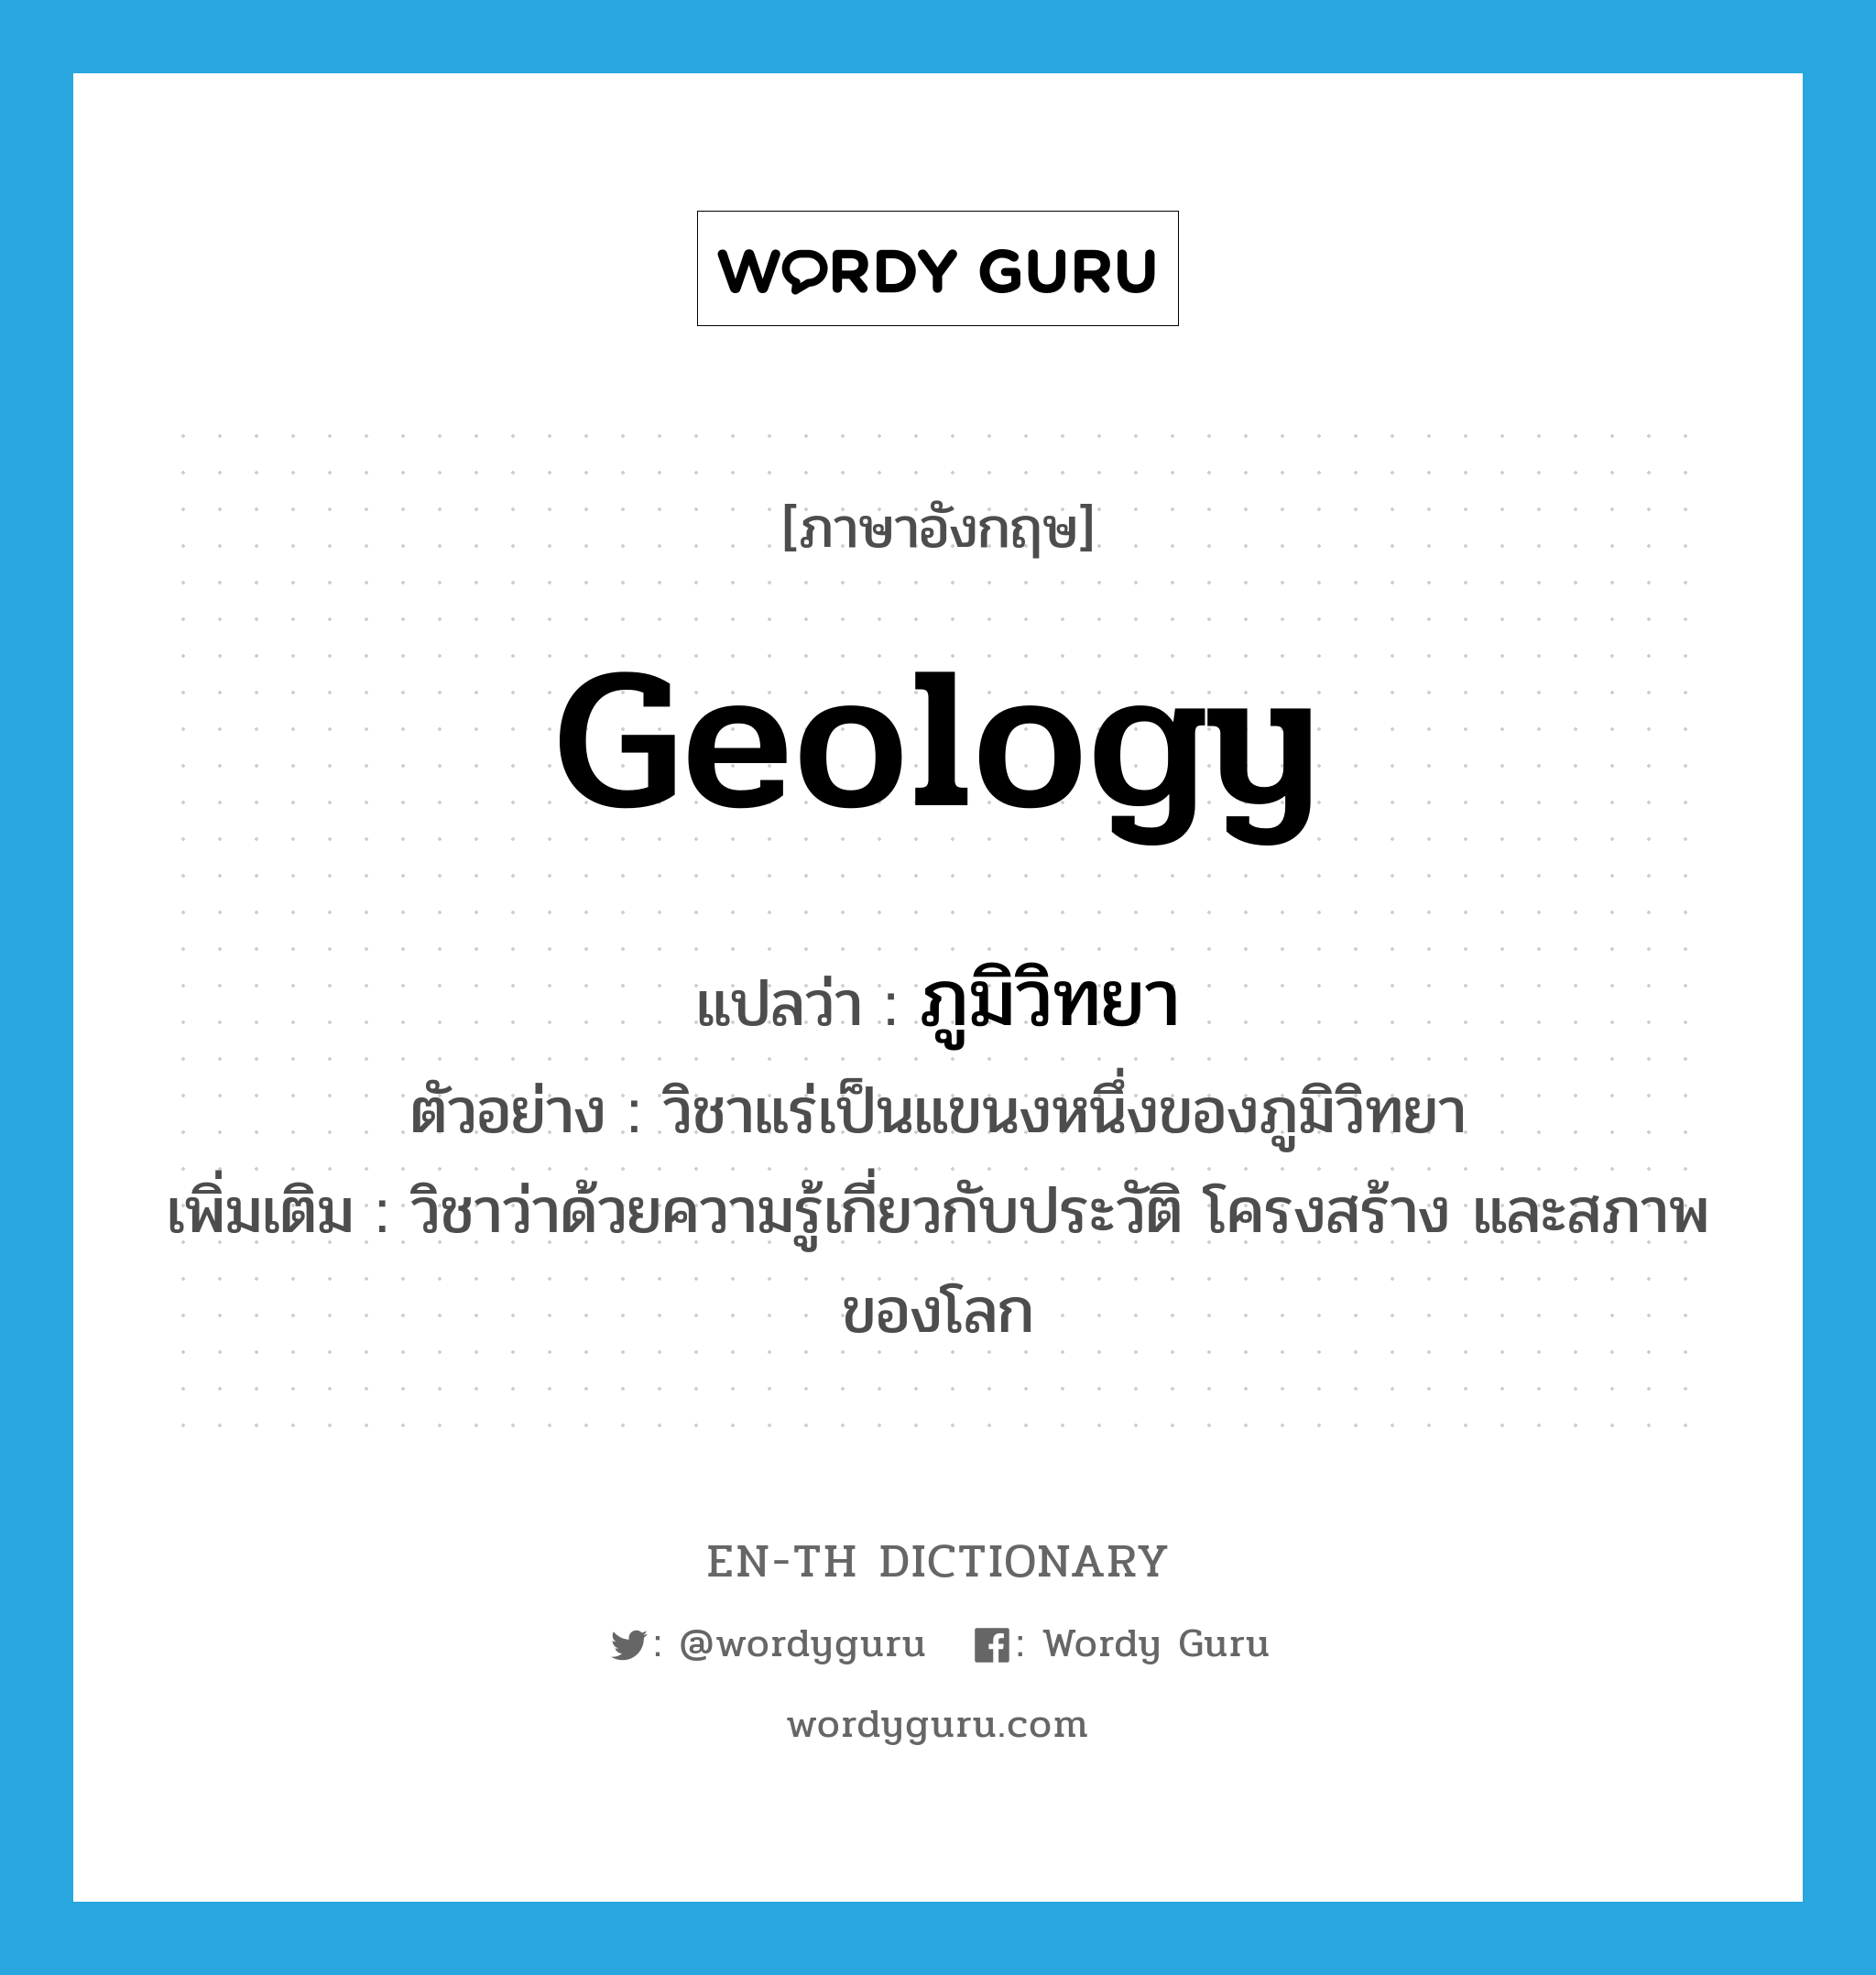 geology แปลว่า?, คำศัพท์ภาษาอังกฤษ geology แปลว่า ภูมิวิทยา ประเภท N ตัวอย่าง วิชาแร่เป็นแขนงหนึ่งของภูมิวิทยา เพิ่มเติม วิชาว่าด้วยความรู้เกี่ยวกับประวัติ โครงสร้าง และสภาพของโลก หมวด N